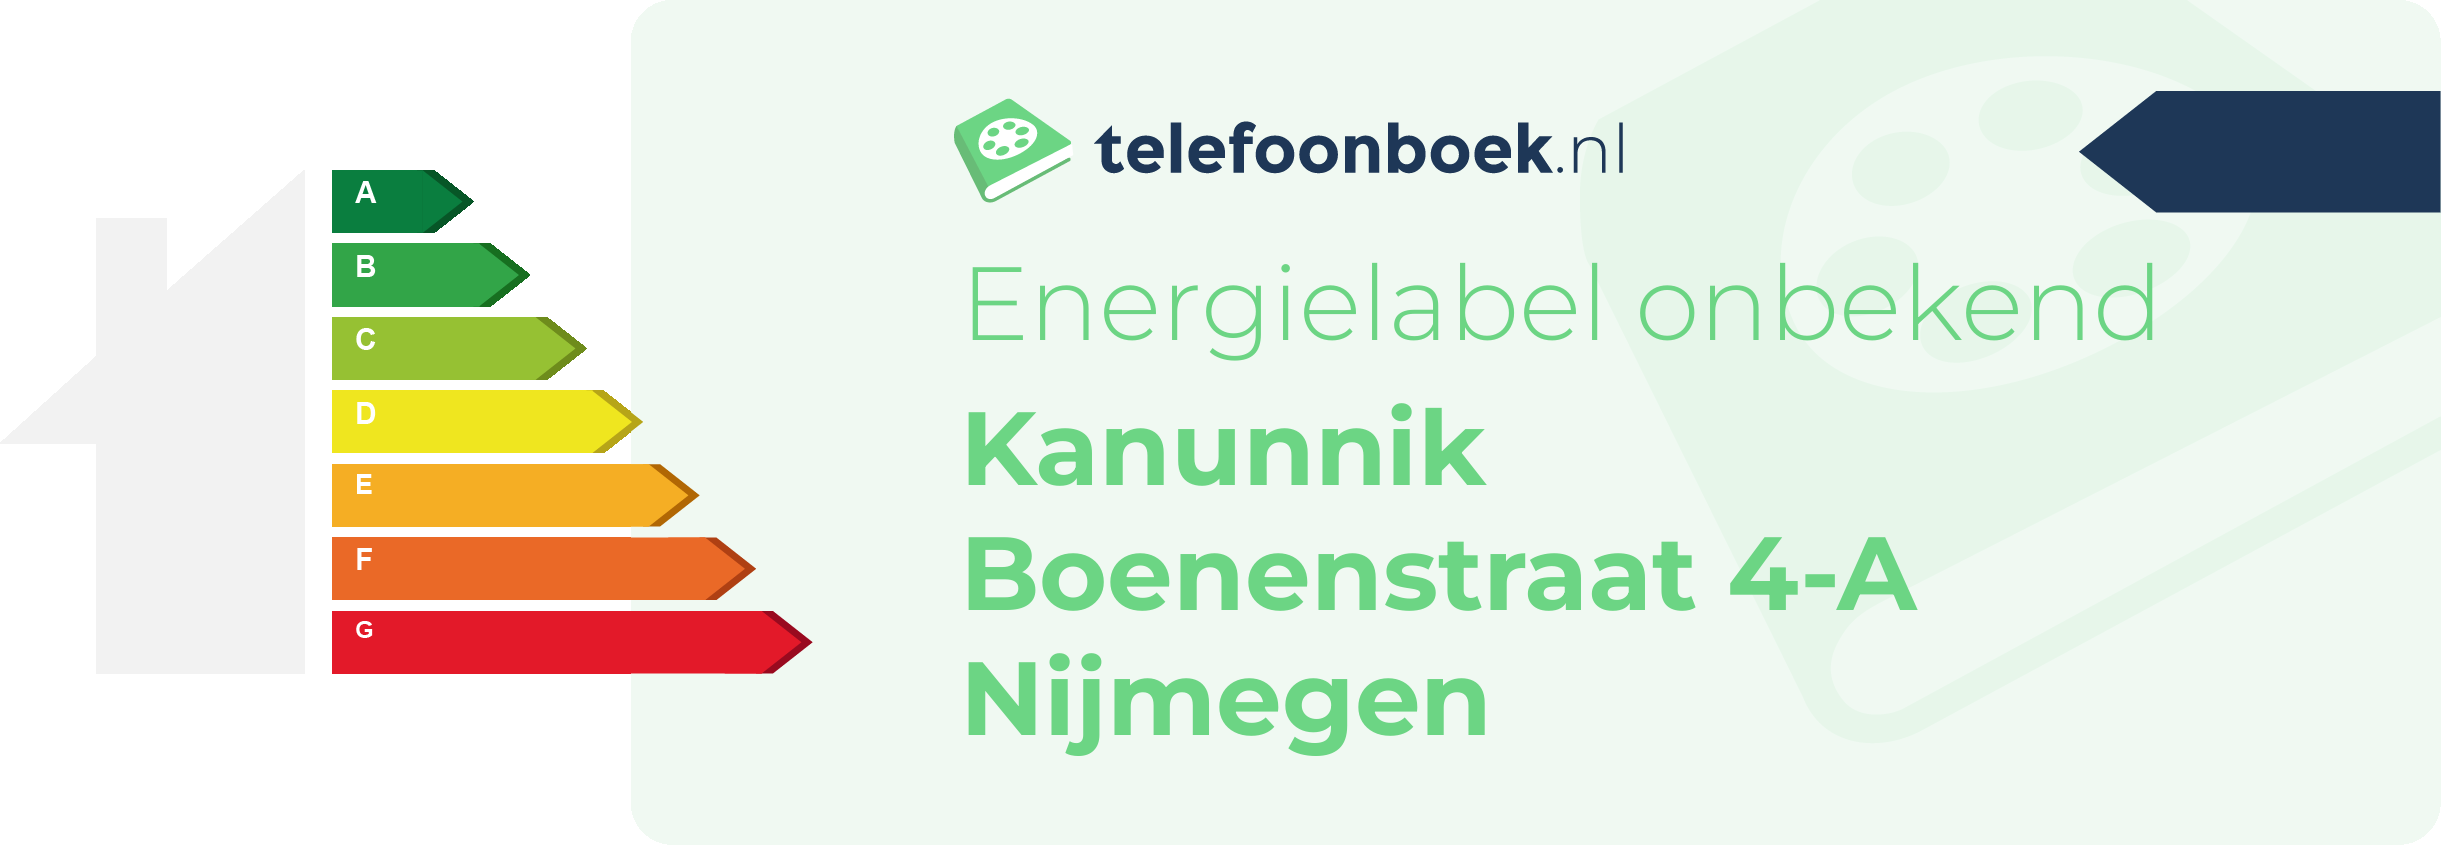 Energielabel Kanunnik Boenenstraat 4-A Nijmegen